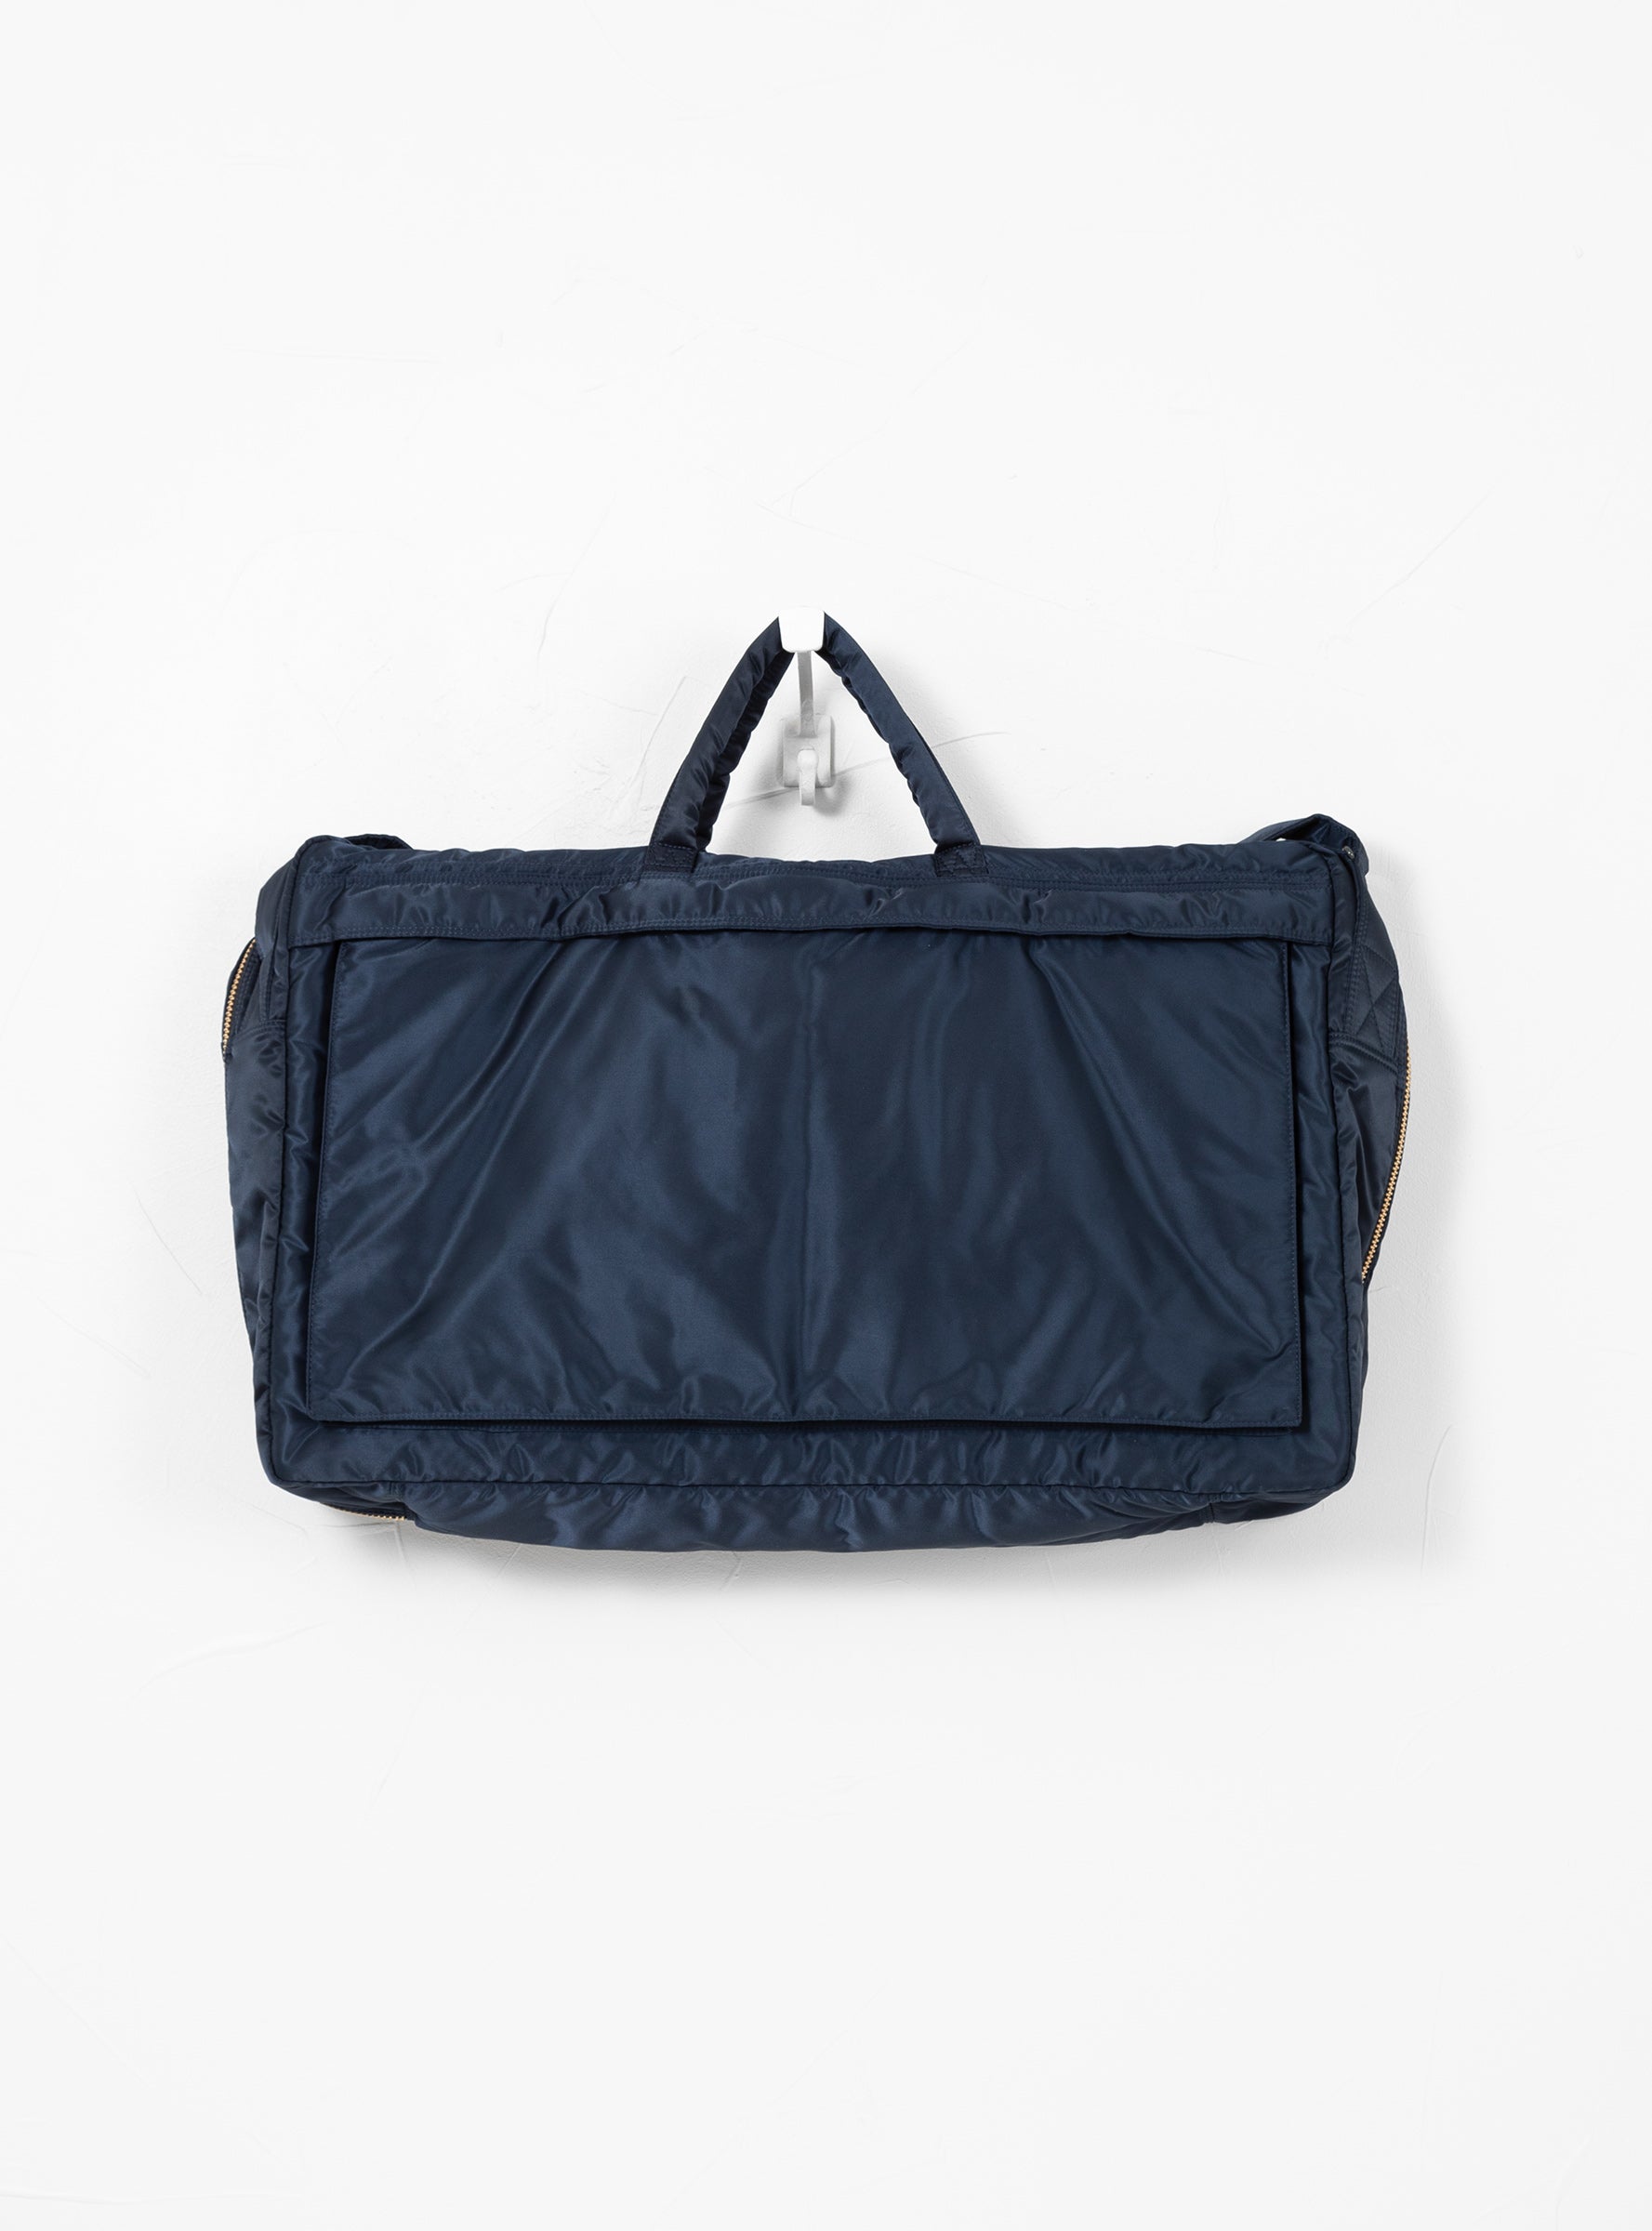 TANKER 2-Way Duffle Bag Large Iron Blue by Porter Yoshida & Co